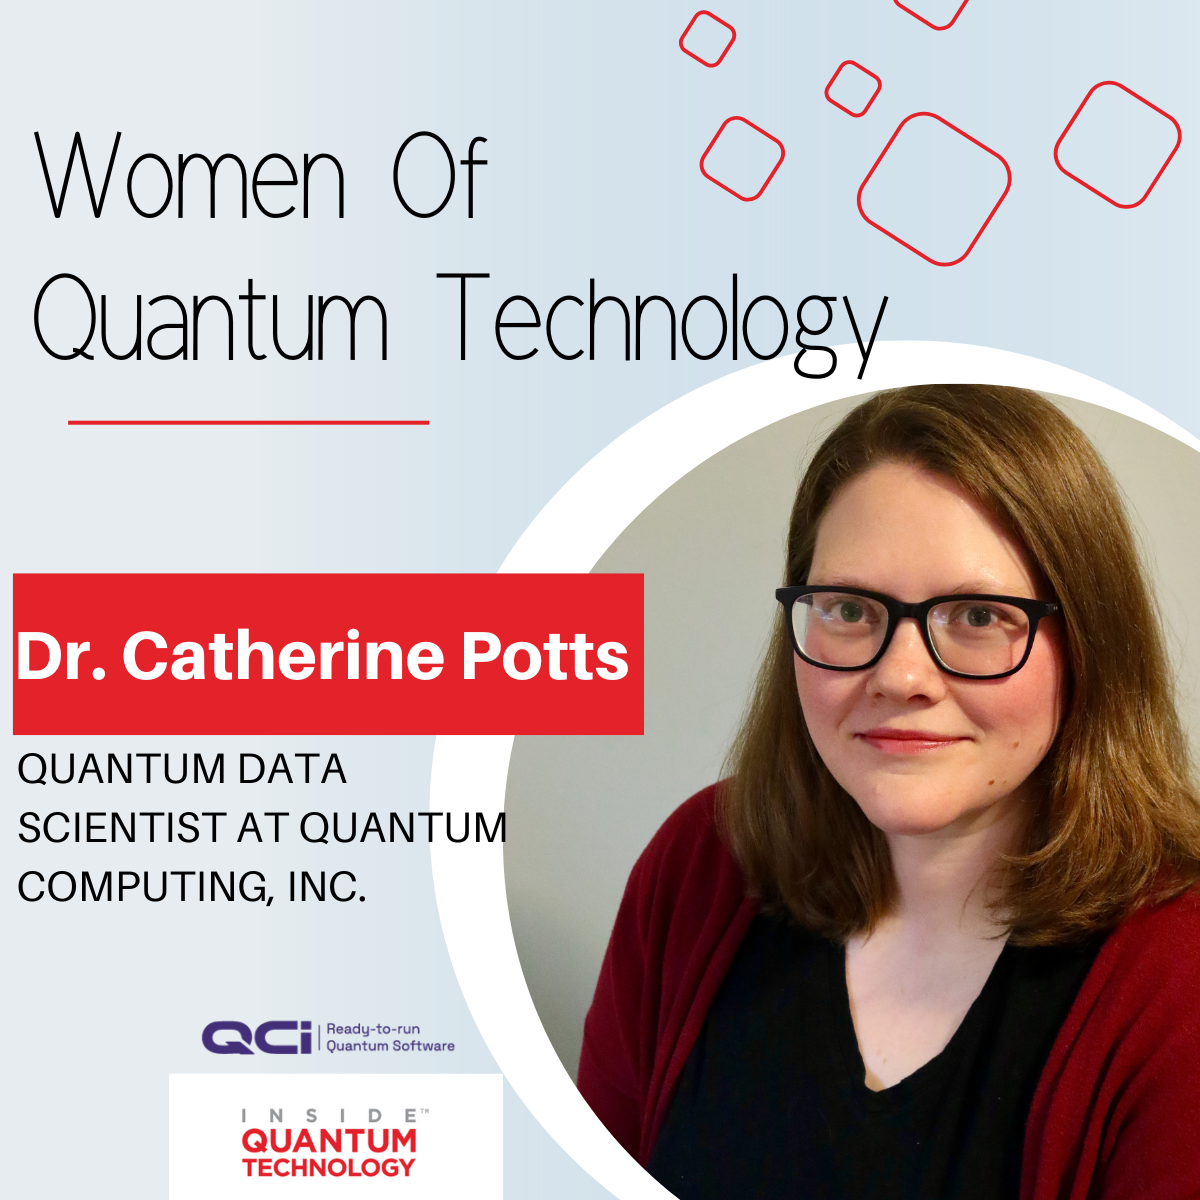 Quantum Computing Inc.'den Dr. Catherine Potts, kuantum endüstrisine geçişten ve bu alanı daha çeşitli hale getirmenin yollarından bahsediyor.